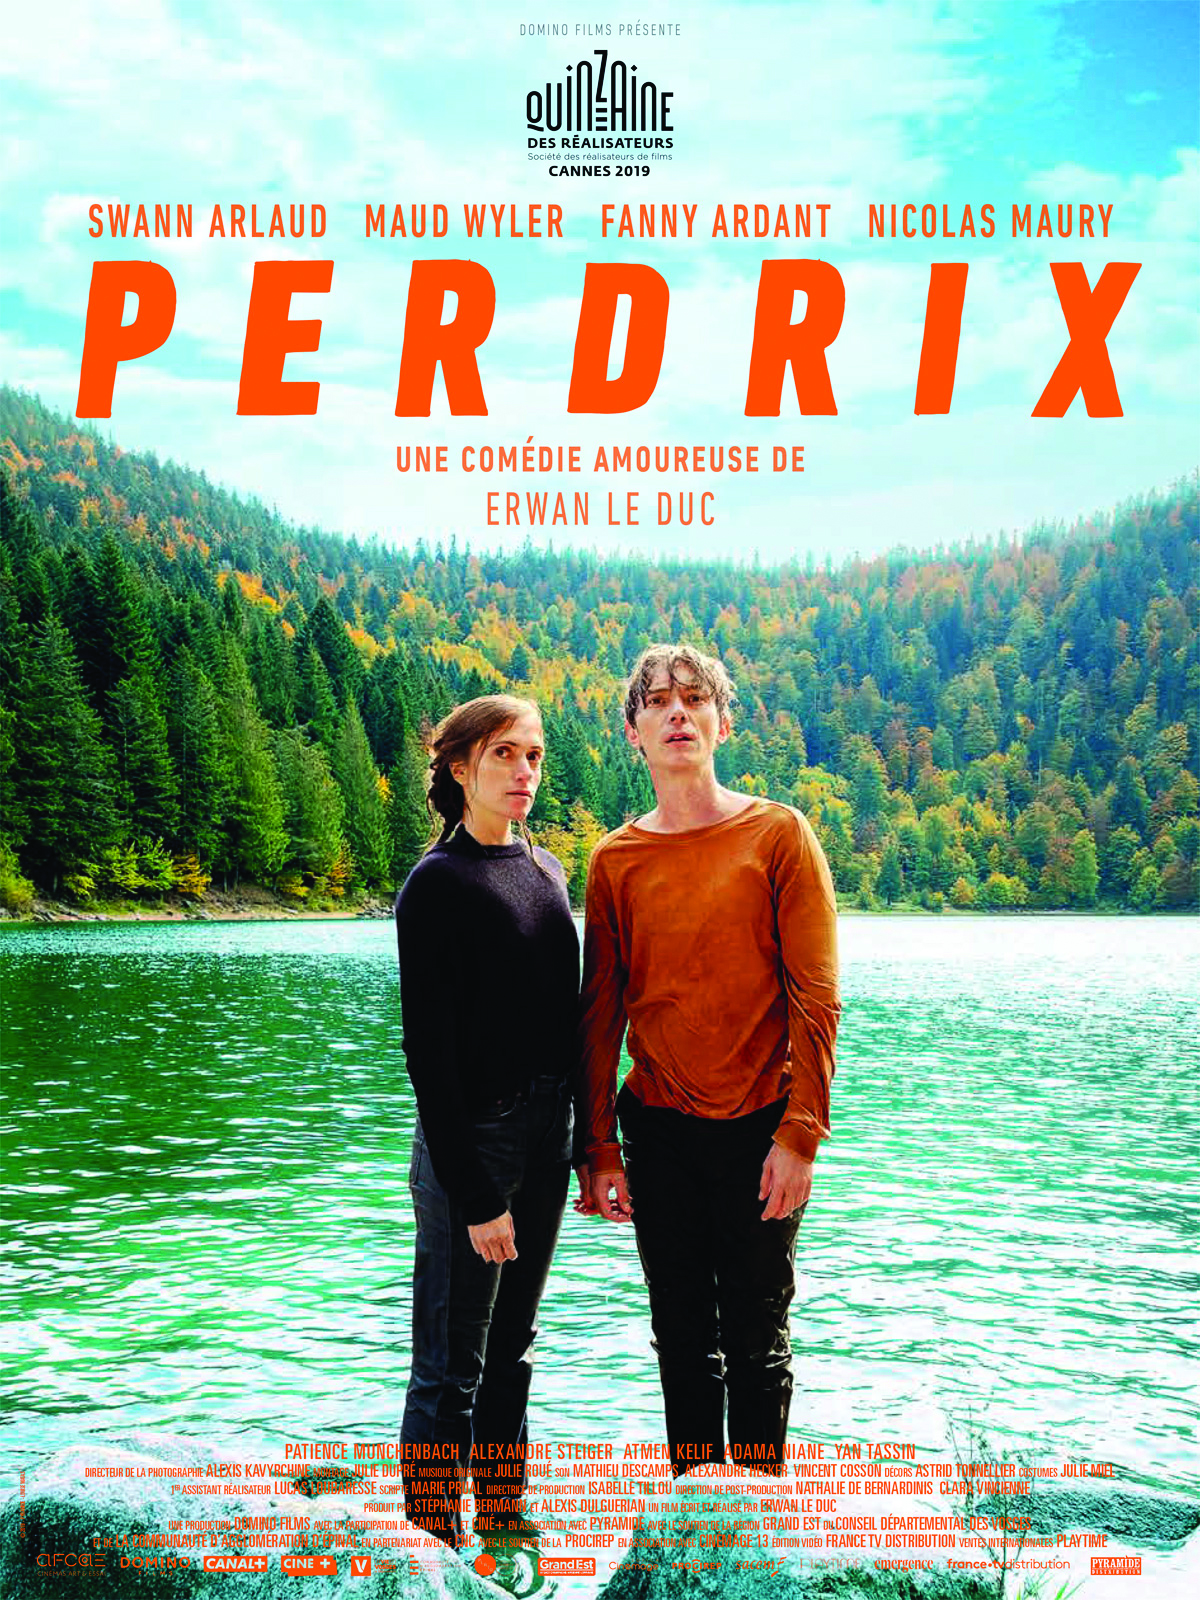 Affiche du film Perdrix, réalisé par Erwan Le Duc et tourné dans les Vosges.